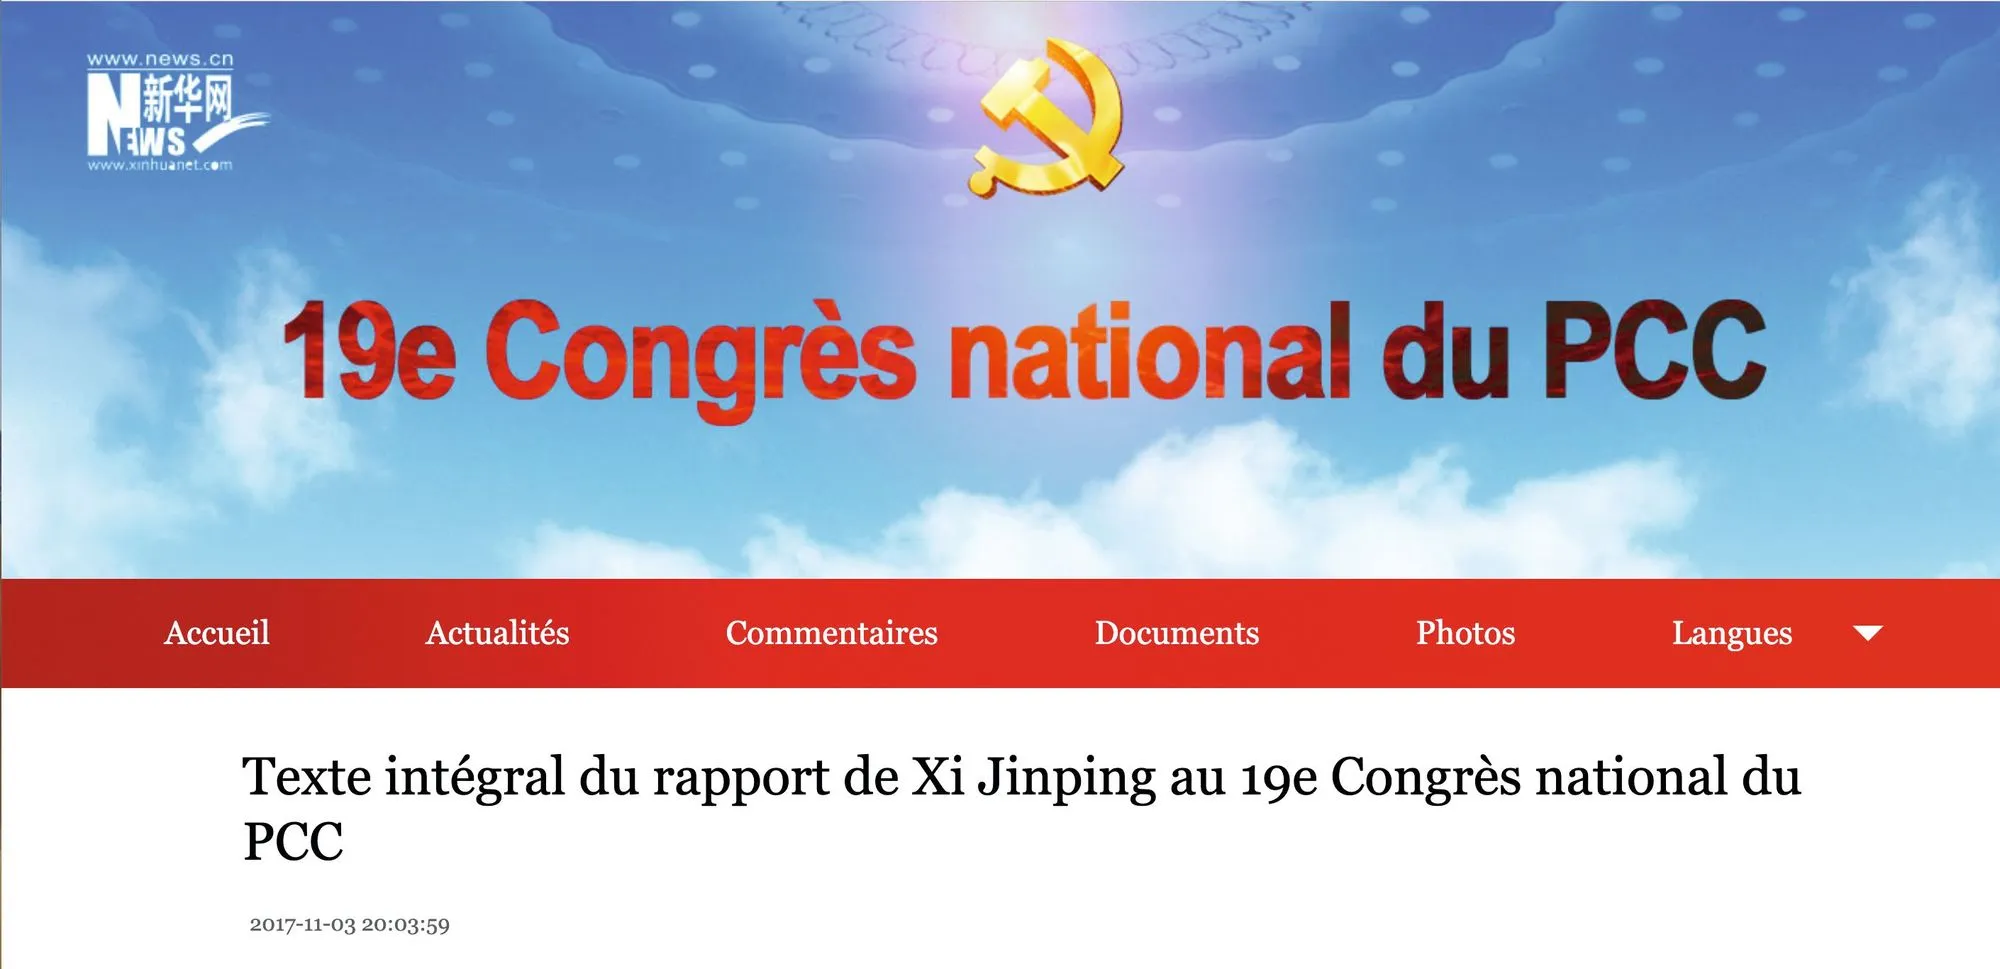 19e Congrès national du PCC